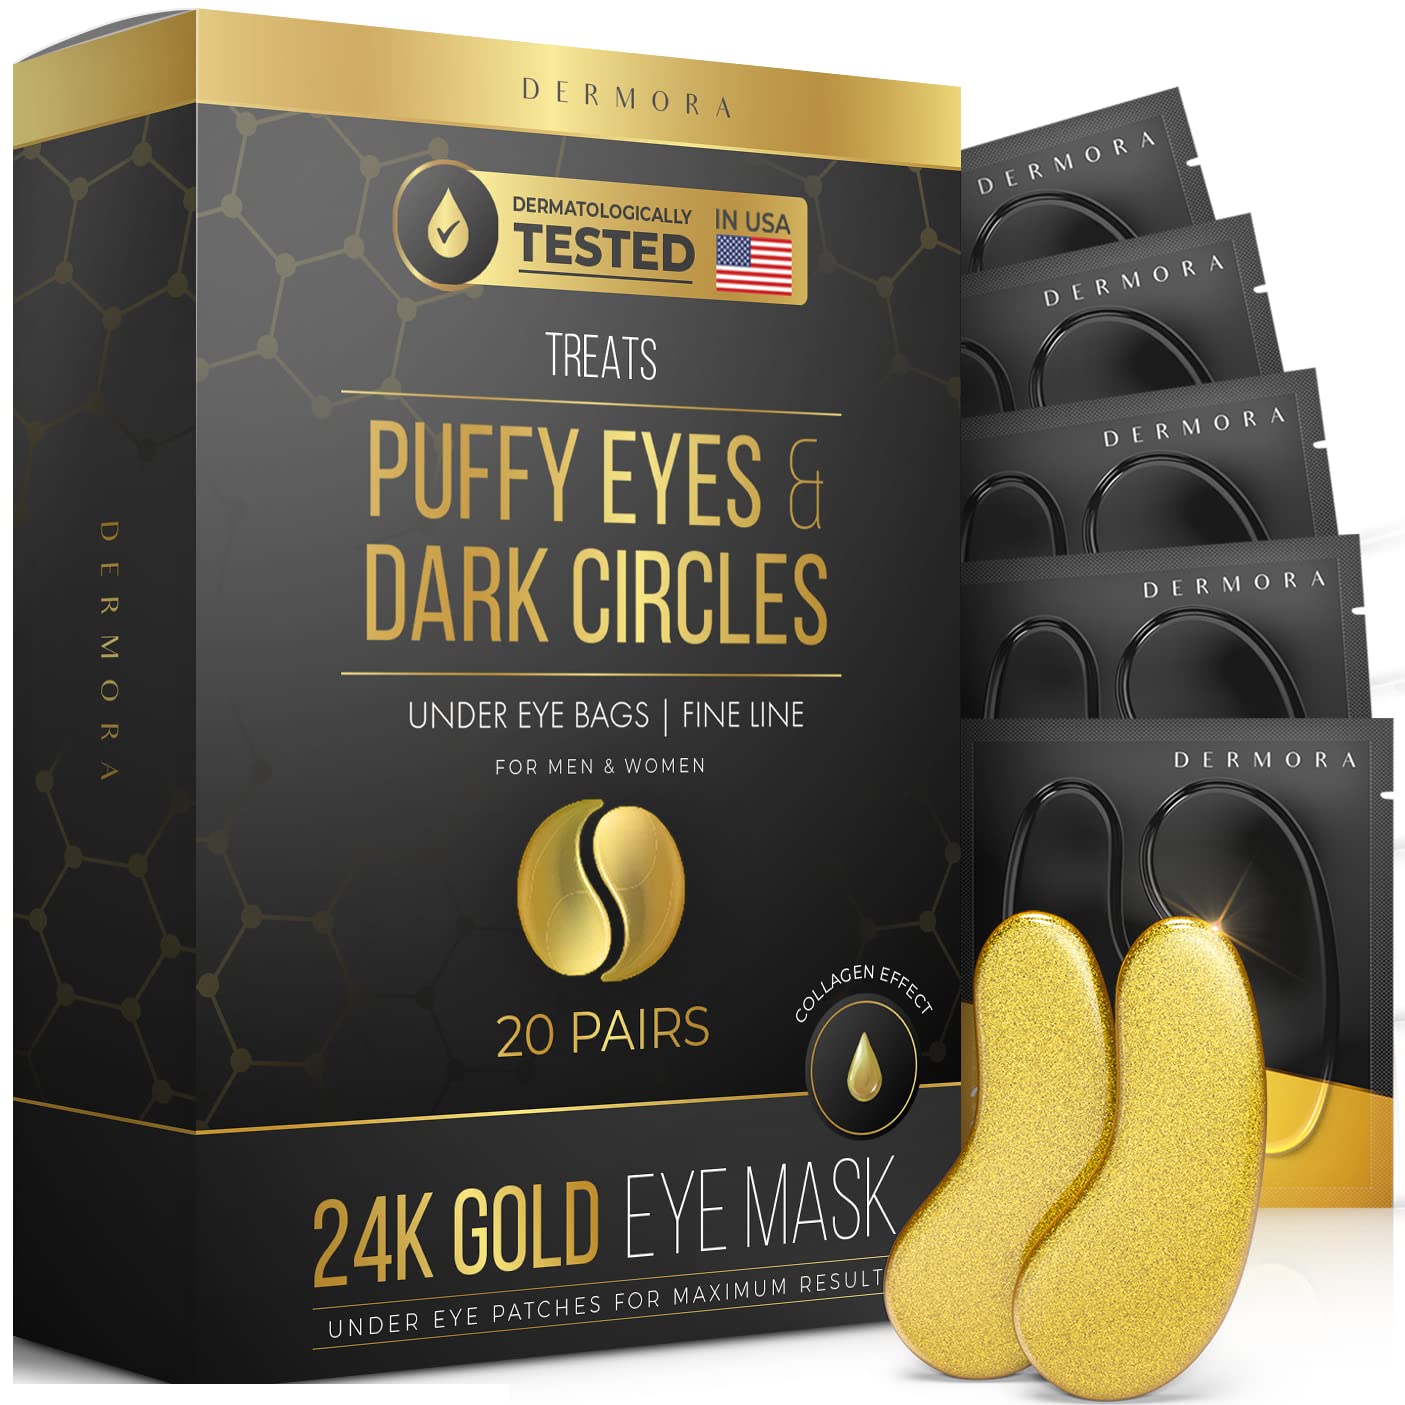 24K Gold Eye Mask– 20 Pairs - Puffy Eyes and Dark Circles Treatments 